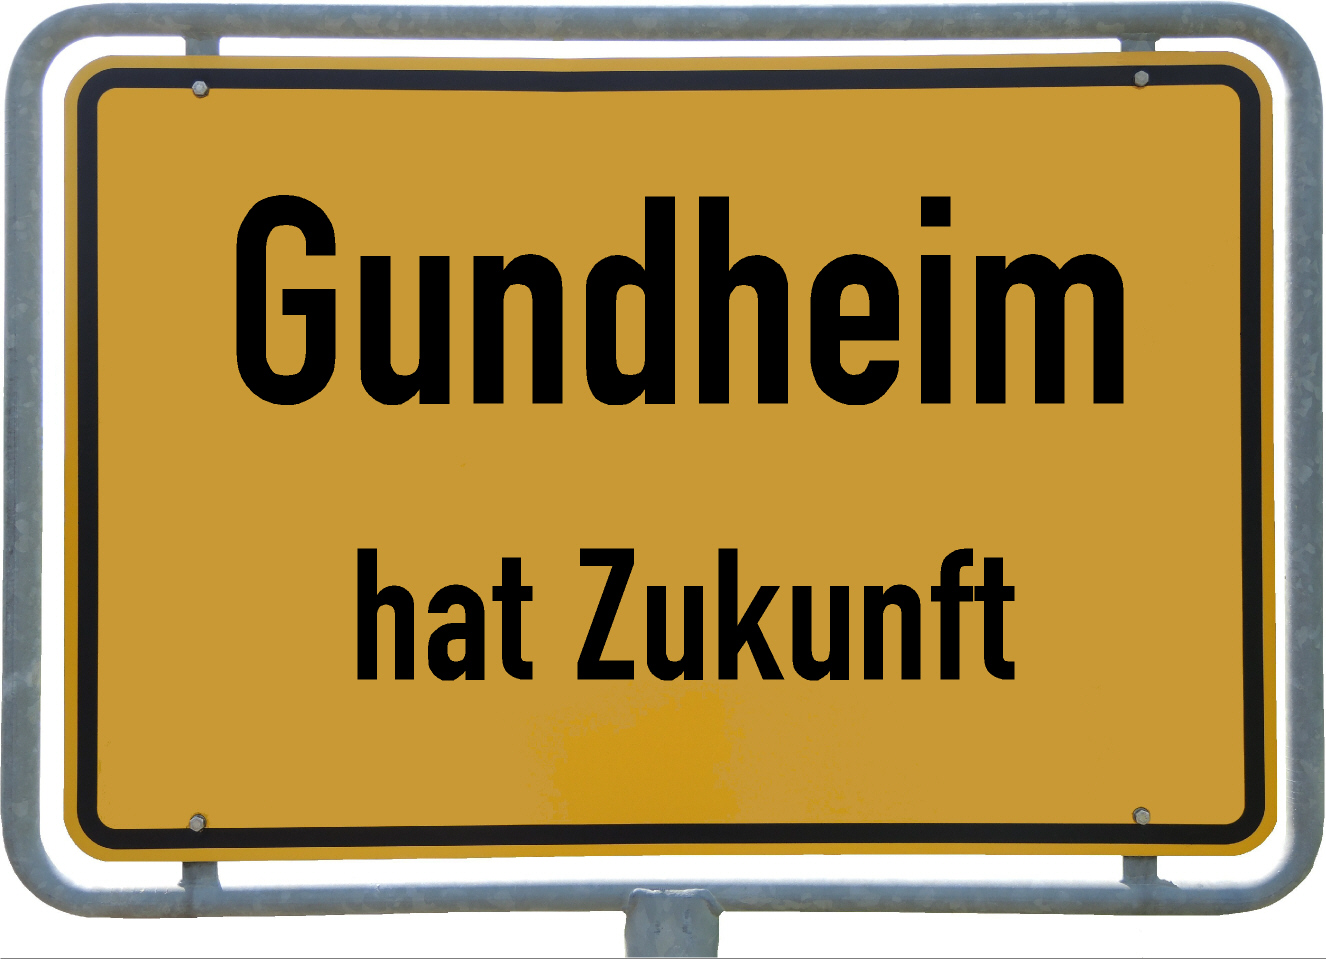 Gundheim hat Zukunft